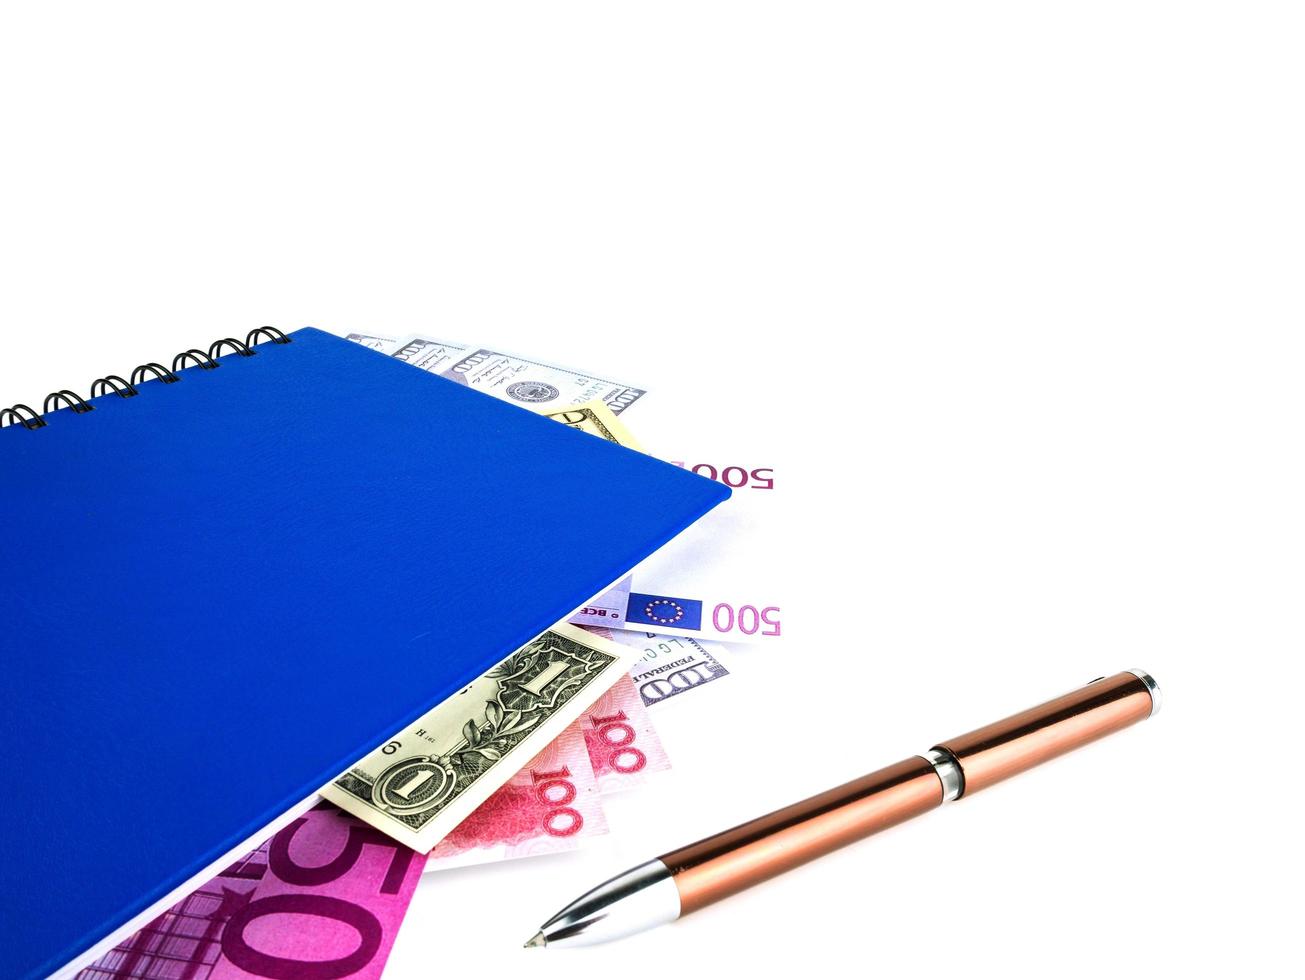 livro azul com notas internacionais aninhadas, isoladas no fundo branco. stash of money concept, business ideas foto